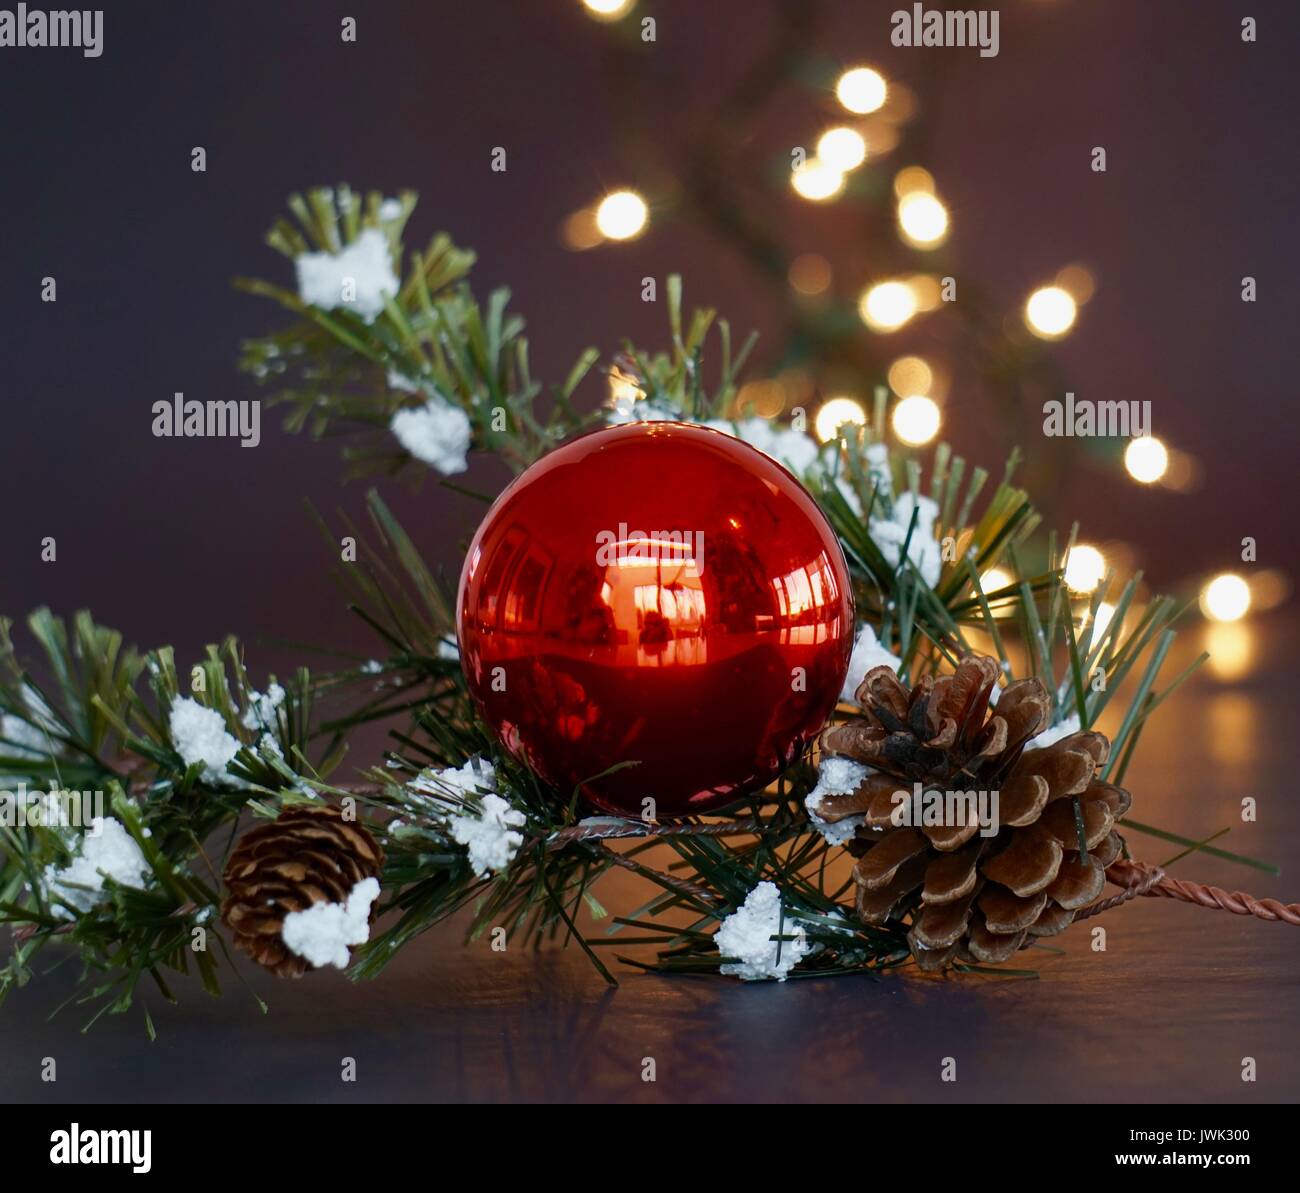 Boule de Noël rouge avec des lumières blanches et garland boisé Banque D'Images